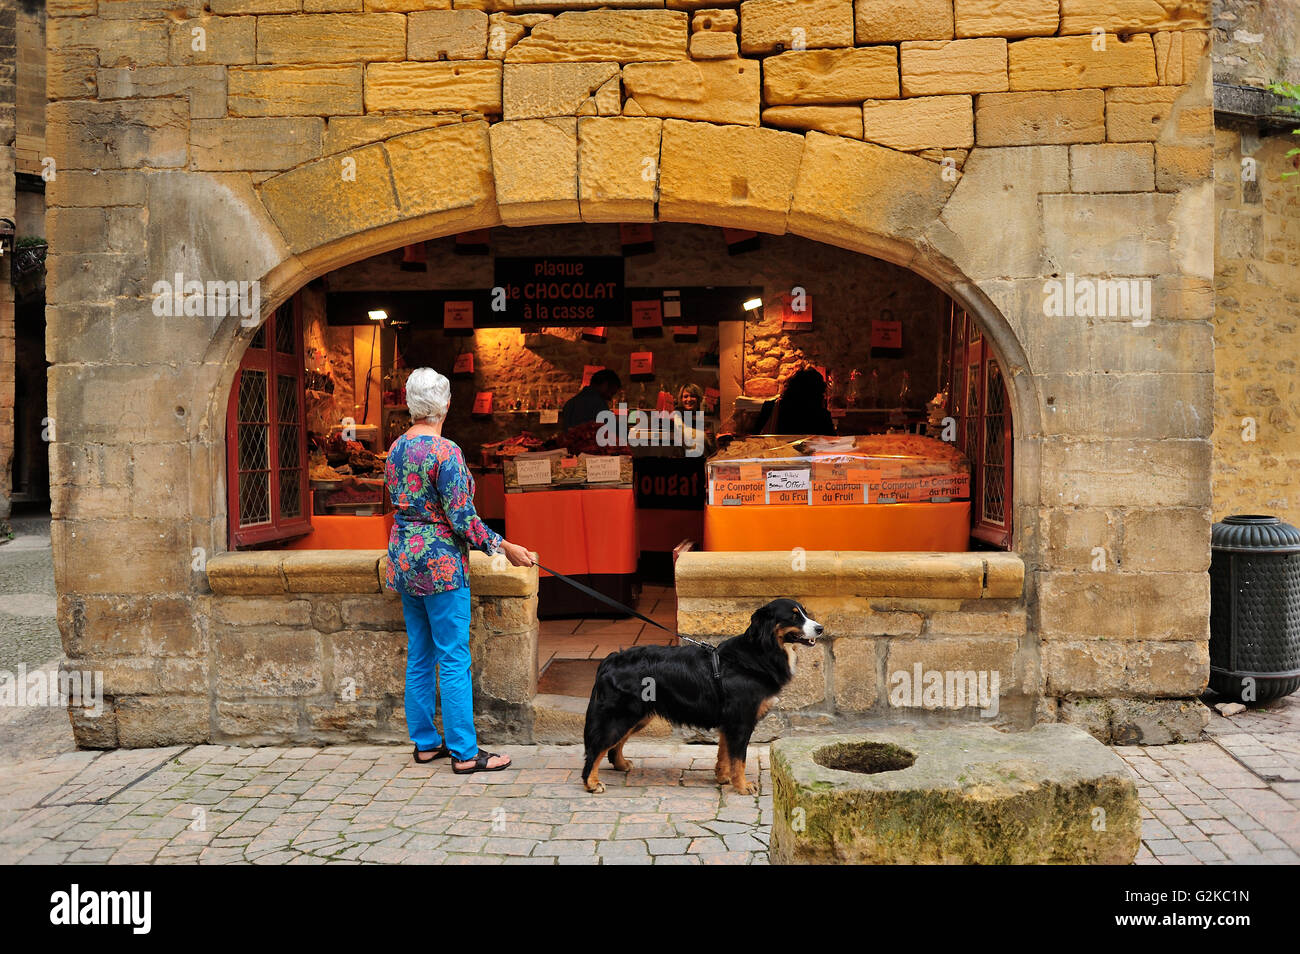 shop front, Place de la Liberte, Sarlat-la-Caneda, Dordogne Department, Aquitaine, France Stock Photo